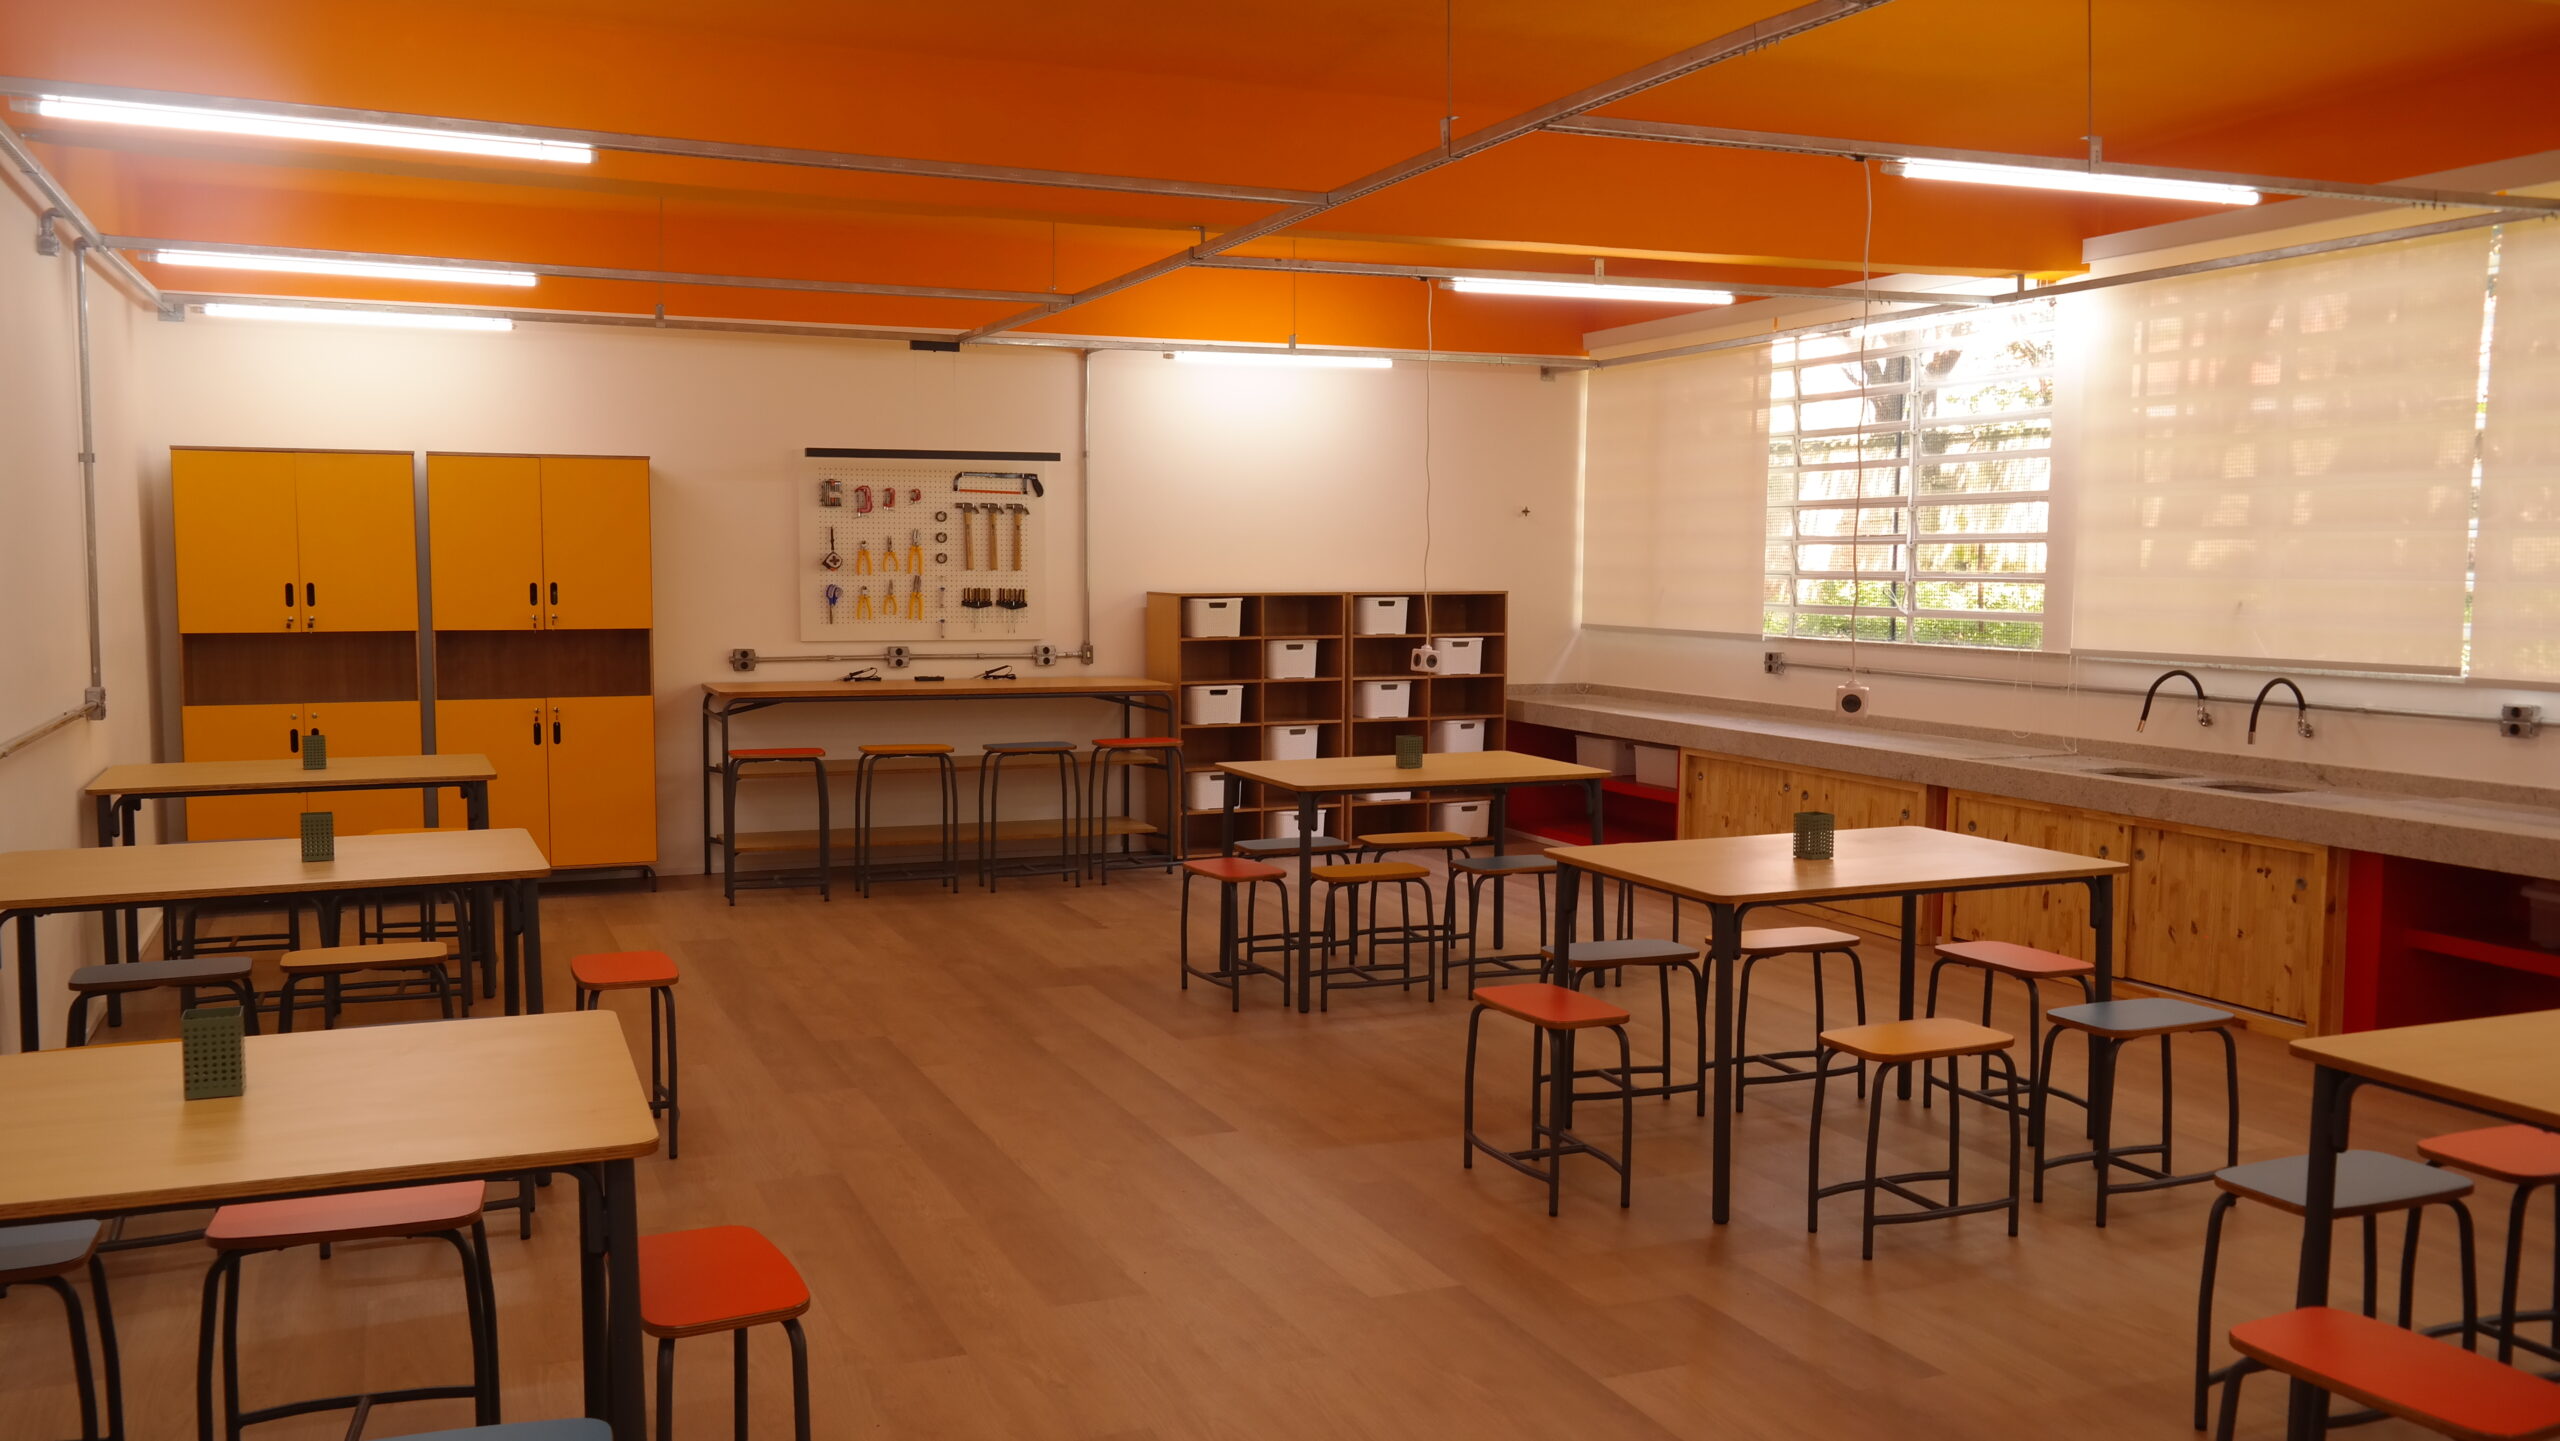 Sala de aula com mesas coletivas e bancos laminados de cores variadas. Ao fundo, armários e painel com ferramentas.